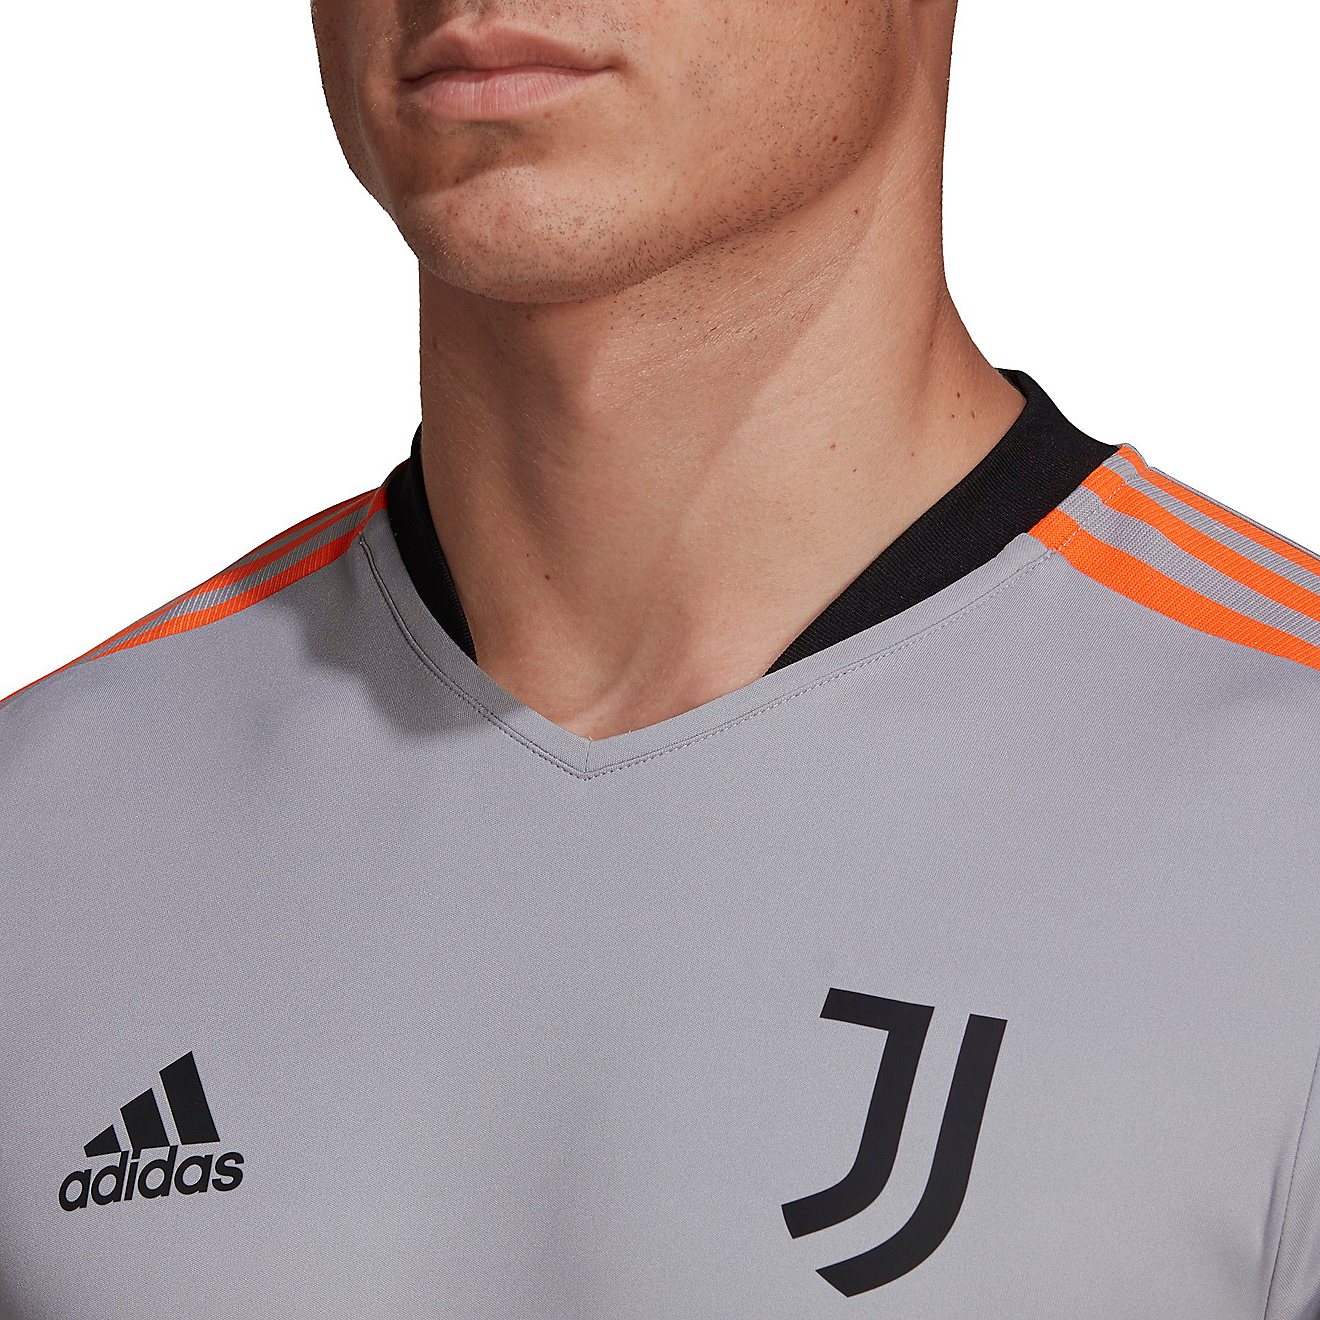 adidas Men's Juventus Tiro Training Jersey                                                                                       - view number 2